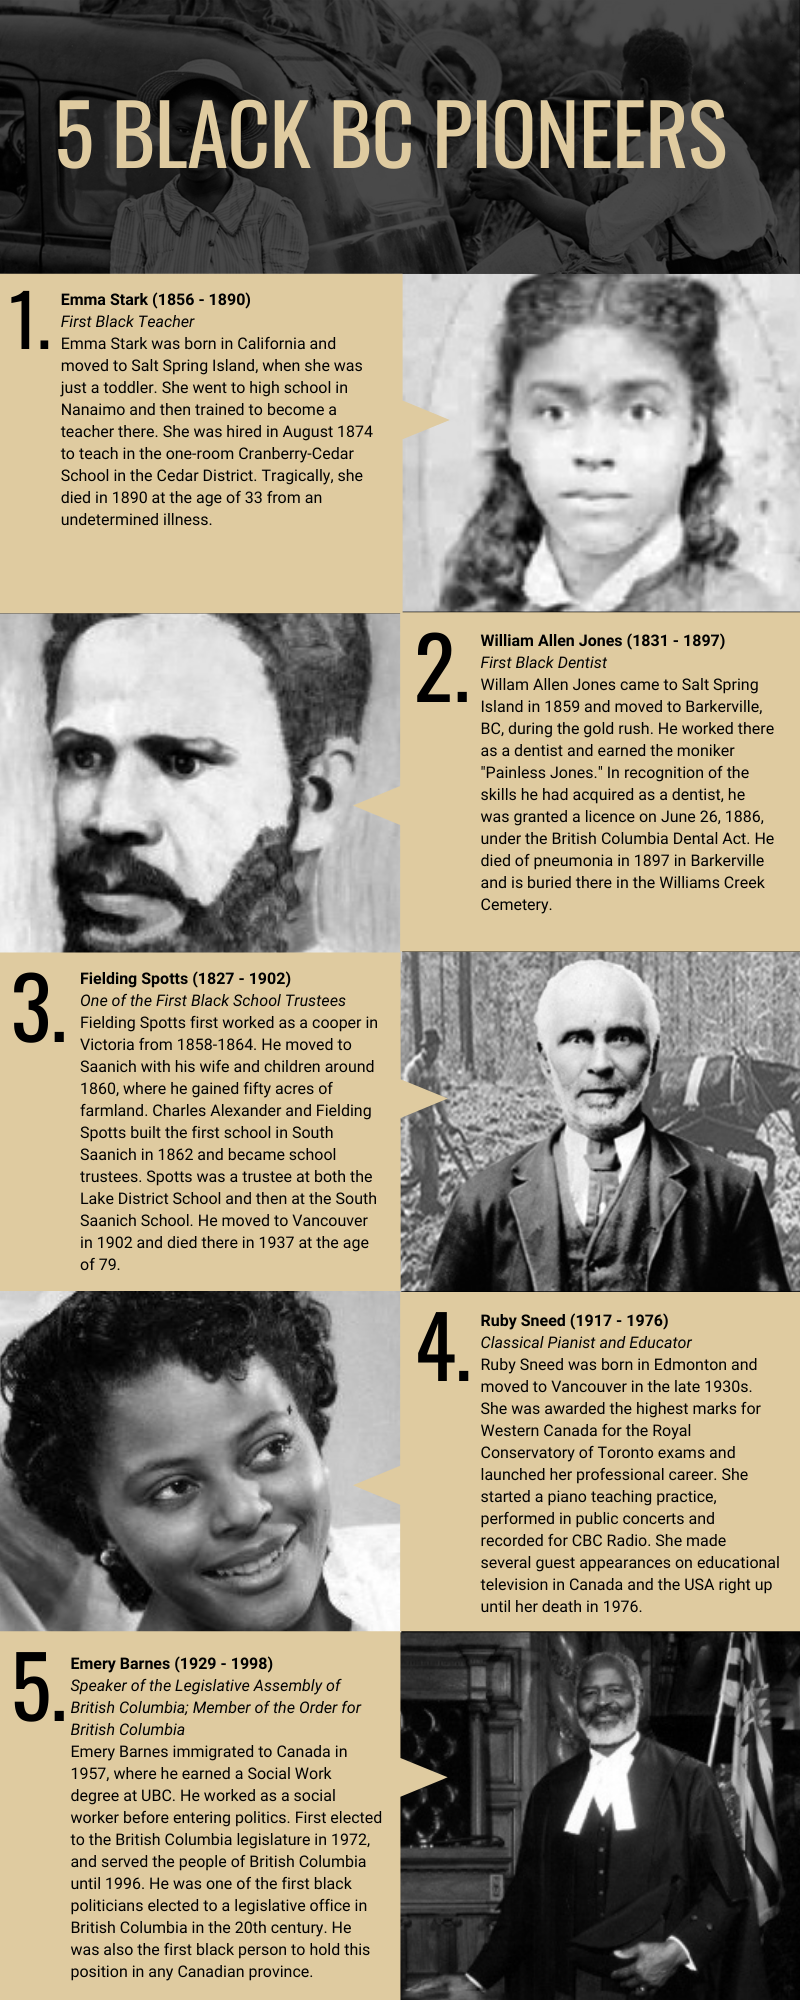 5 Black BC Pioneers